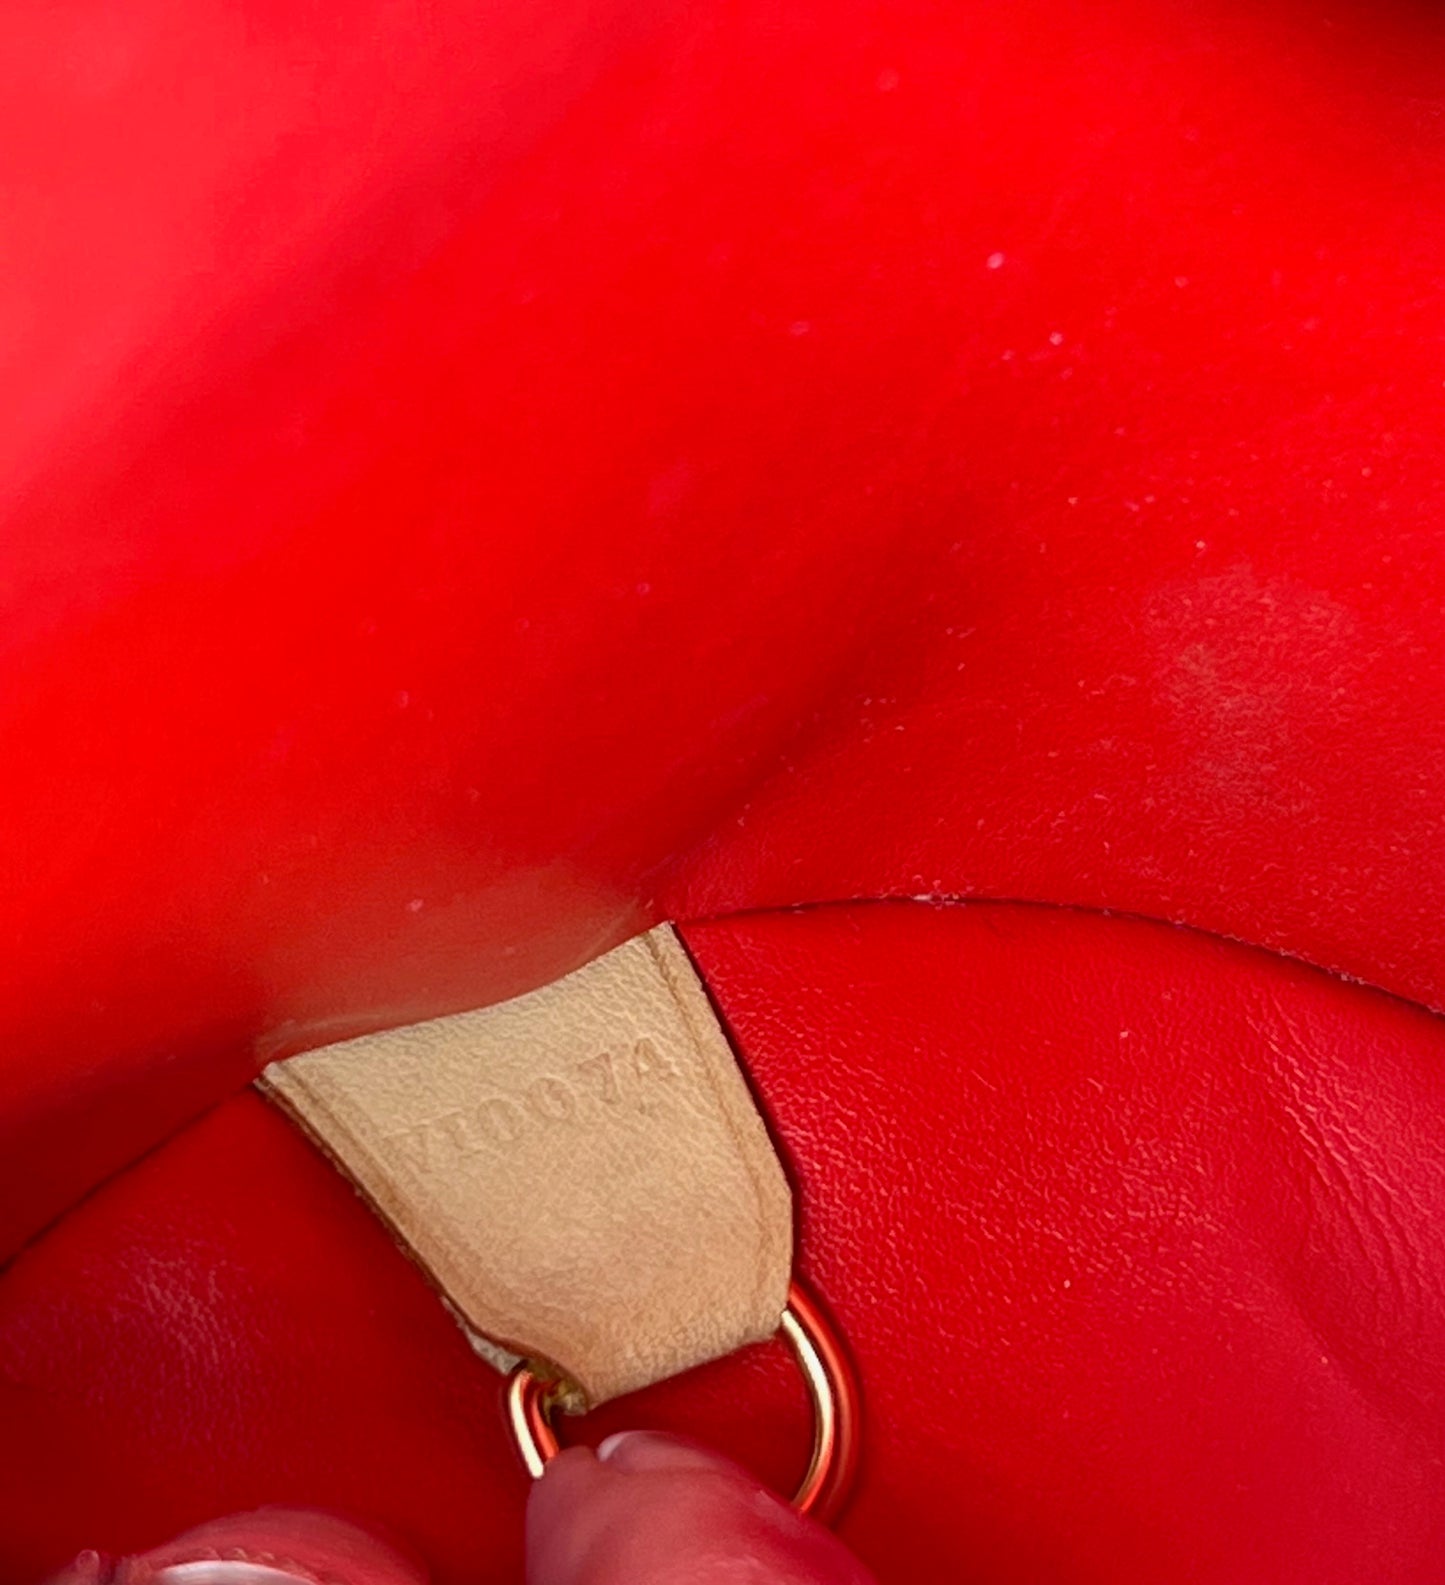 LOUIS VUITTON Handbag Papillon 30 Red Vernis Leather Vintage Shoulder Bag  Preowned Patent leather ref.674157 - Joli Closet